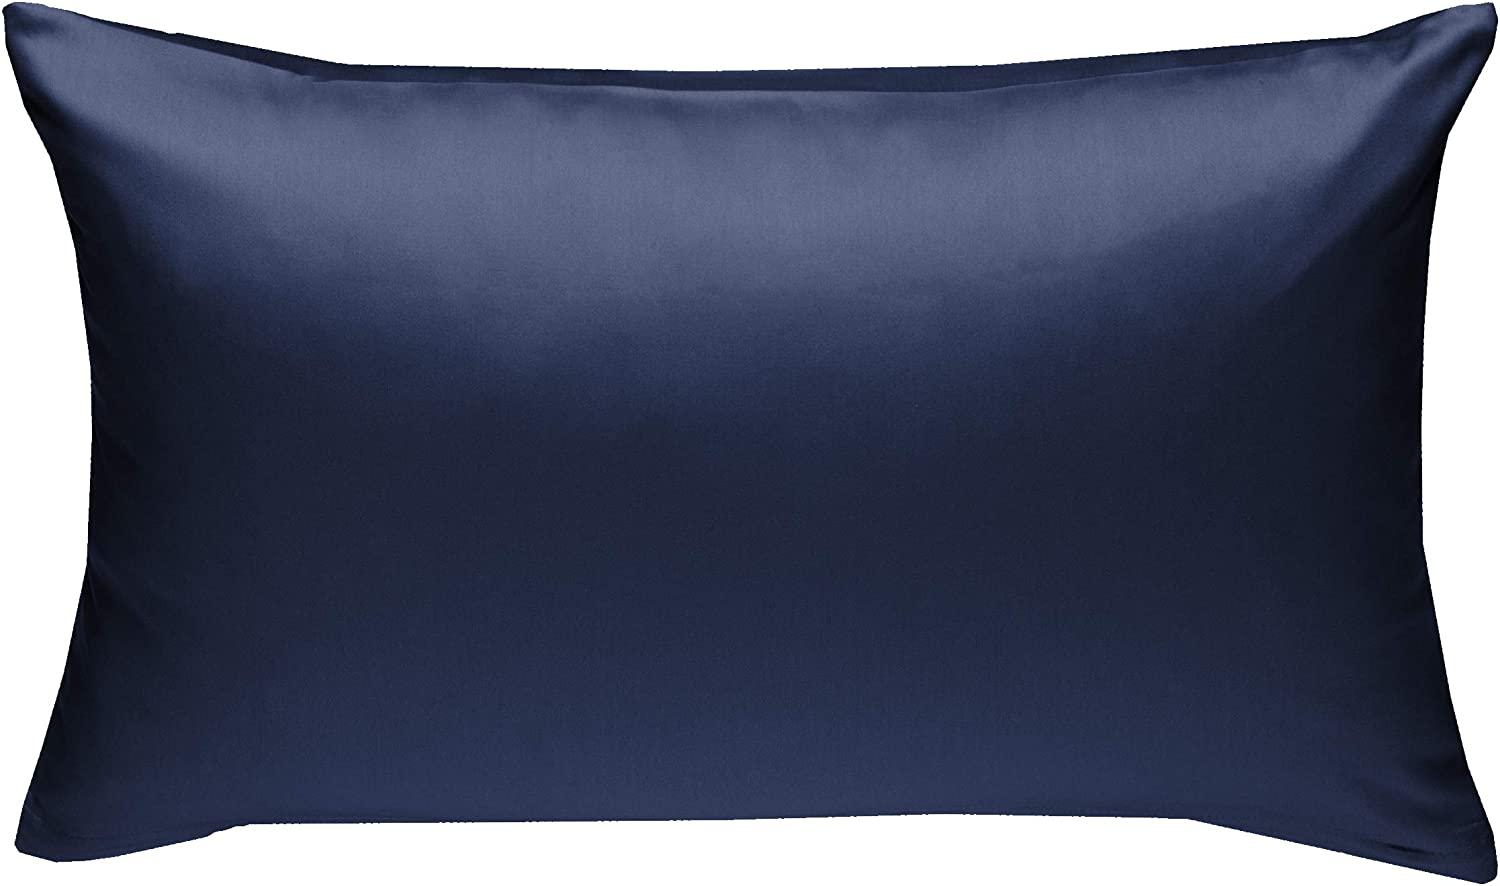 Bettwaesche-mit-Stil Mako-Satin / Baumwollsatin Bettwäsche uni / einfarbig dunkelblau Kissenbezug 60x80 cm Bild 1